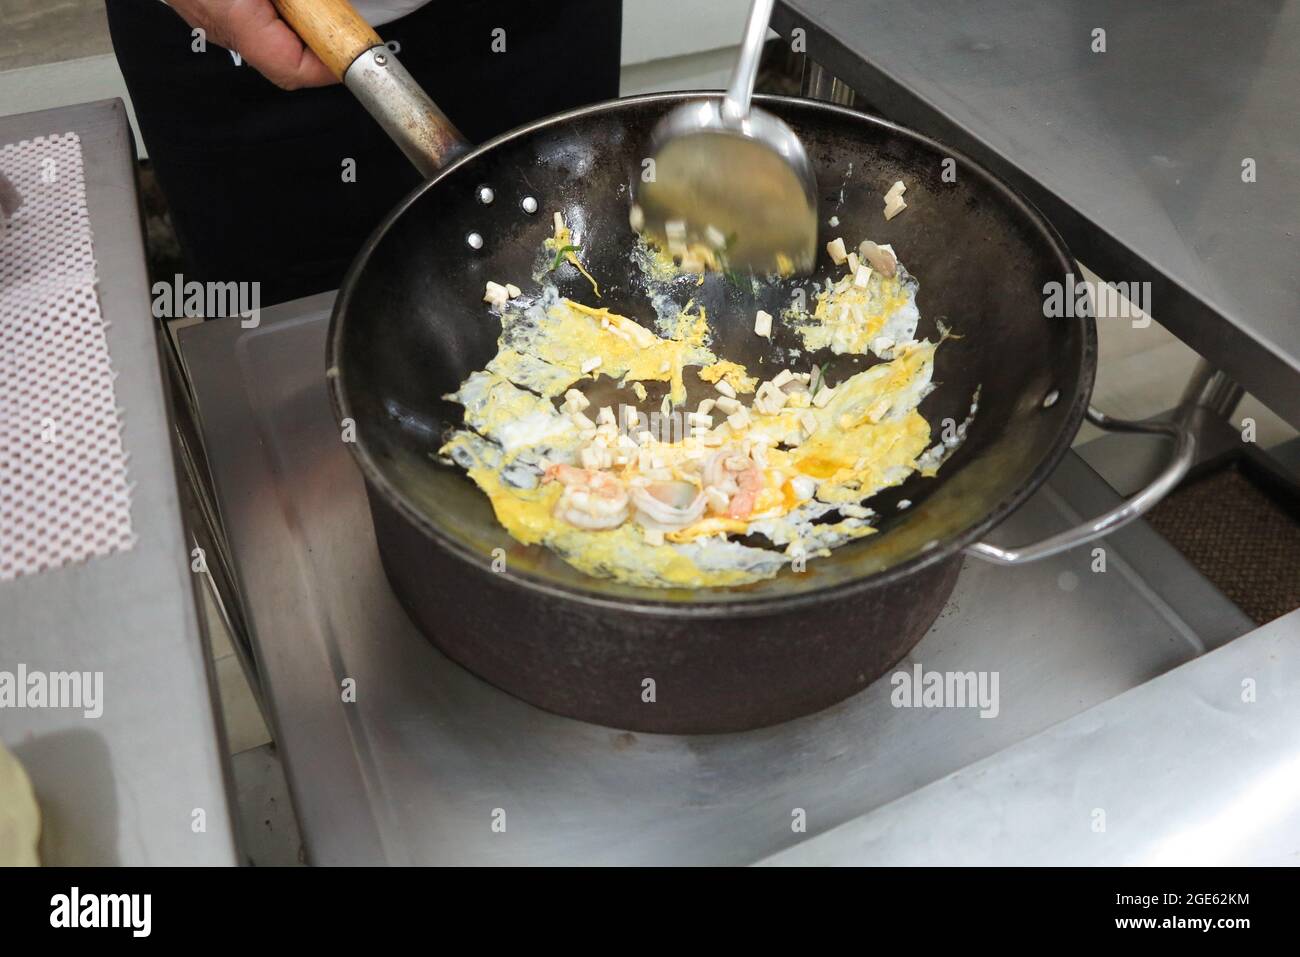 Vue en grand angle des aliments sautés. Œufs, crevettes et morceaux de tofu en cours de cuisson dans un wok en fer noir. Banque D'Images